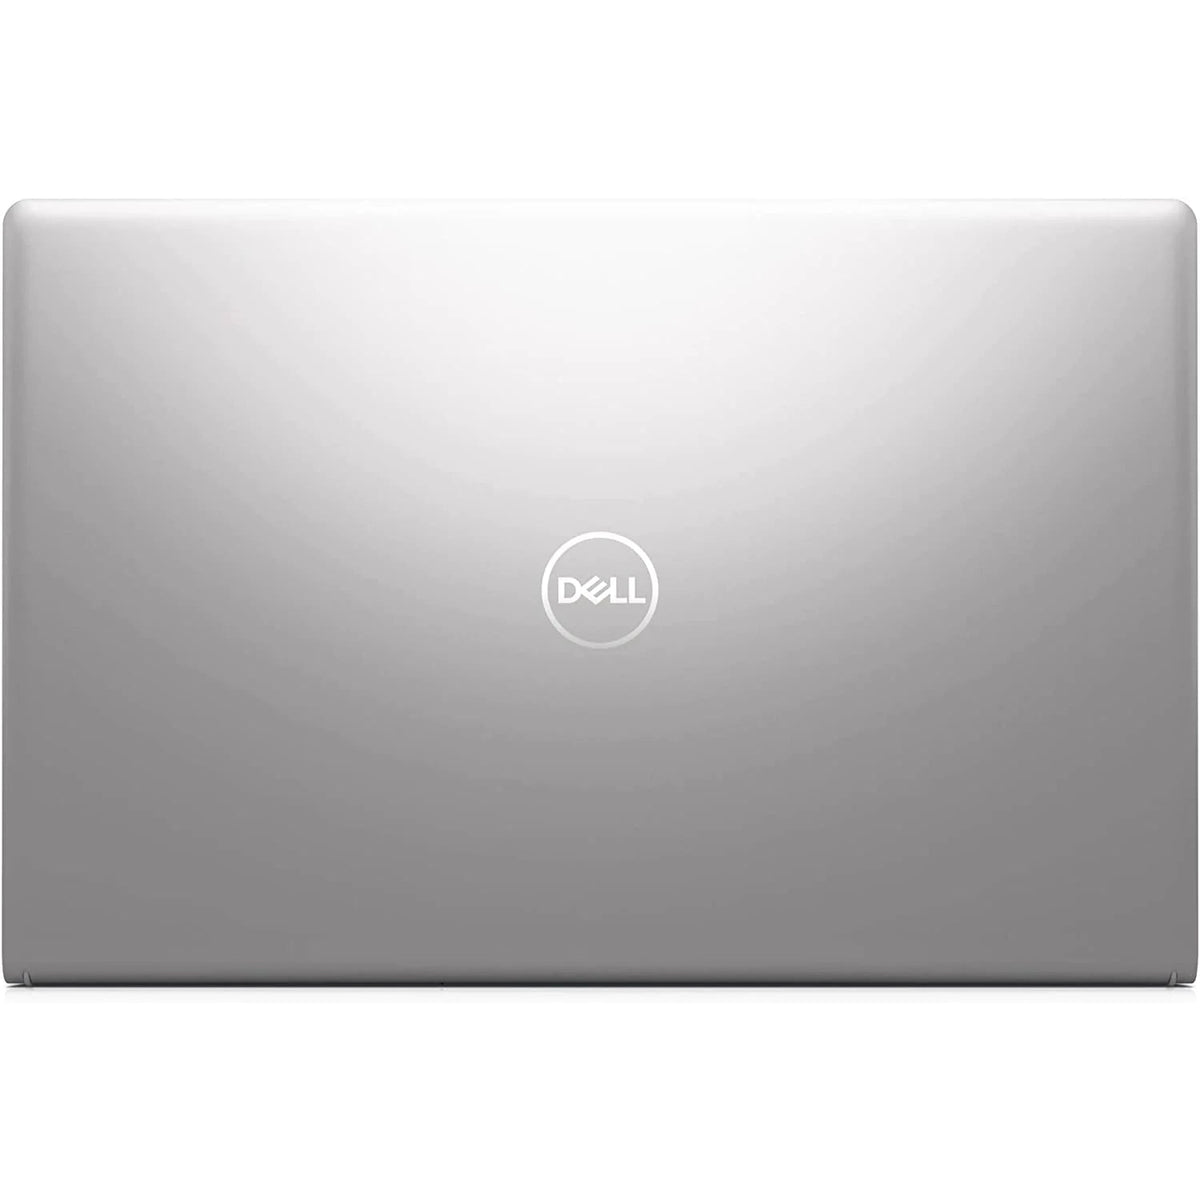 Dell Inspiron 15 3511 Laptop Intel Core i5 8GB RAM 512GB SSD 15.6" - Silver - Open Box